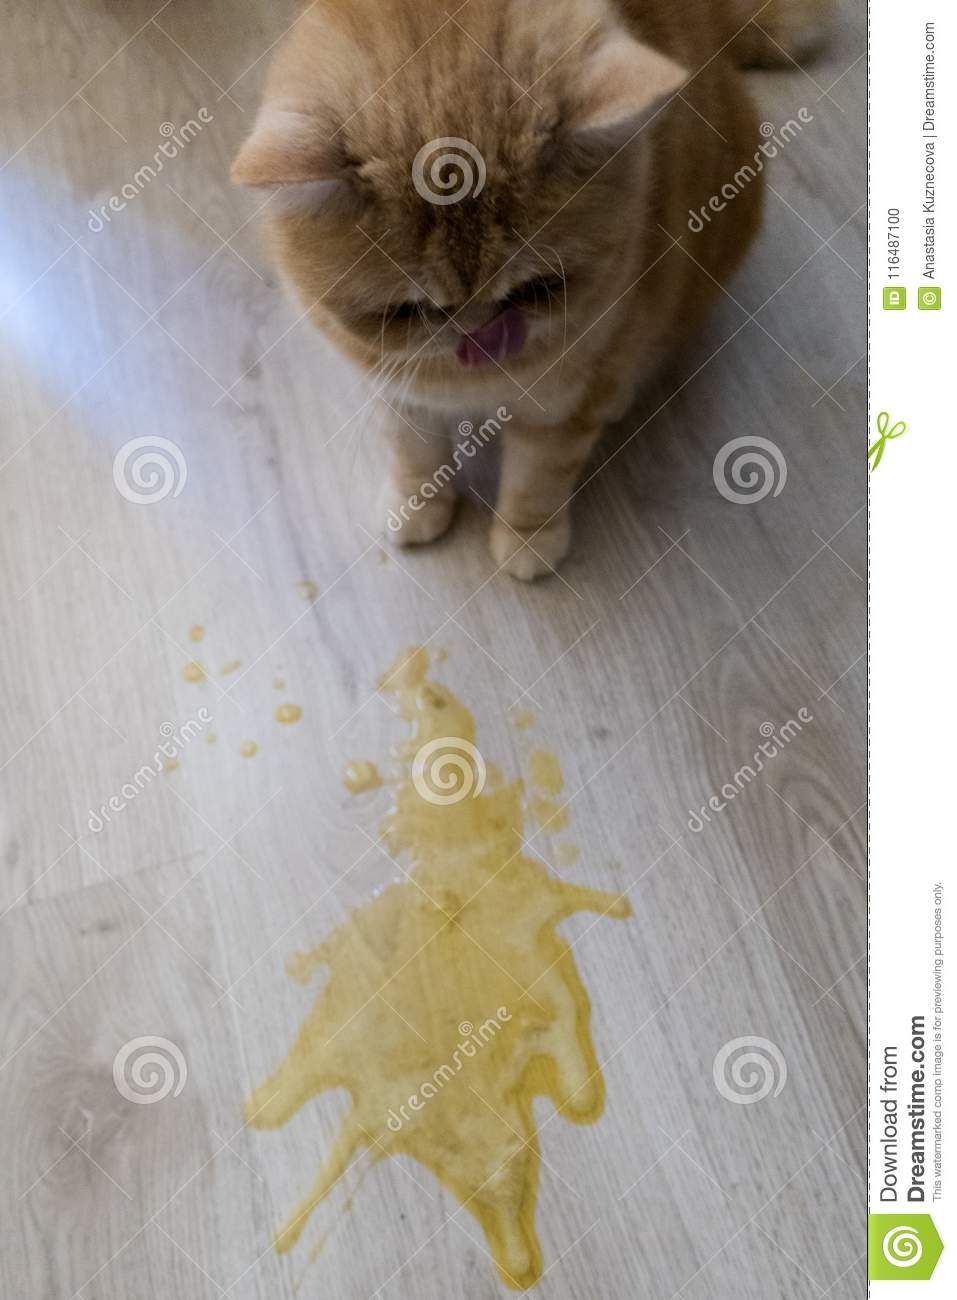 Кошка блюет жидкостью. Кот рыгнул желтой жидкостью. Тошнит желтой жидкостью. Кота стошнило желтой жидкостью.